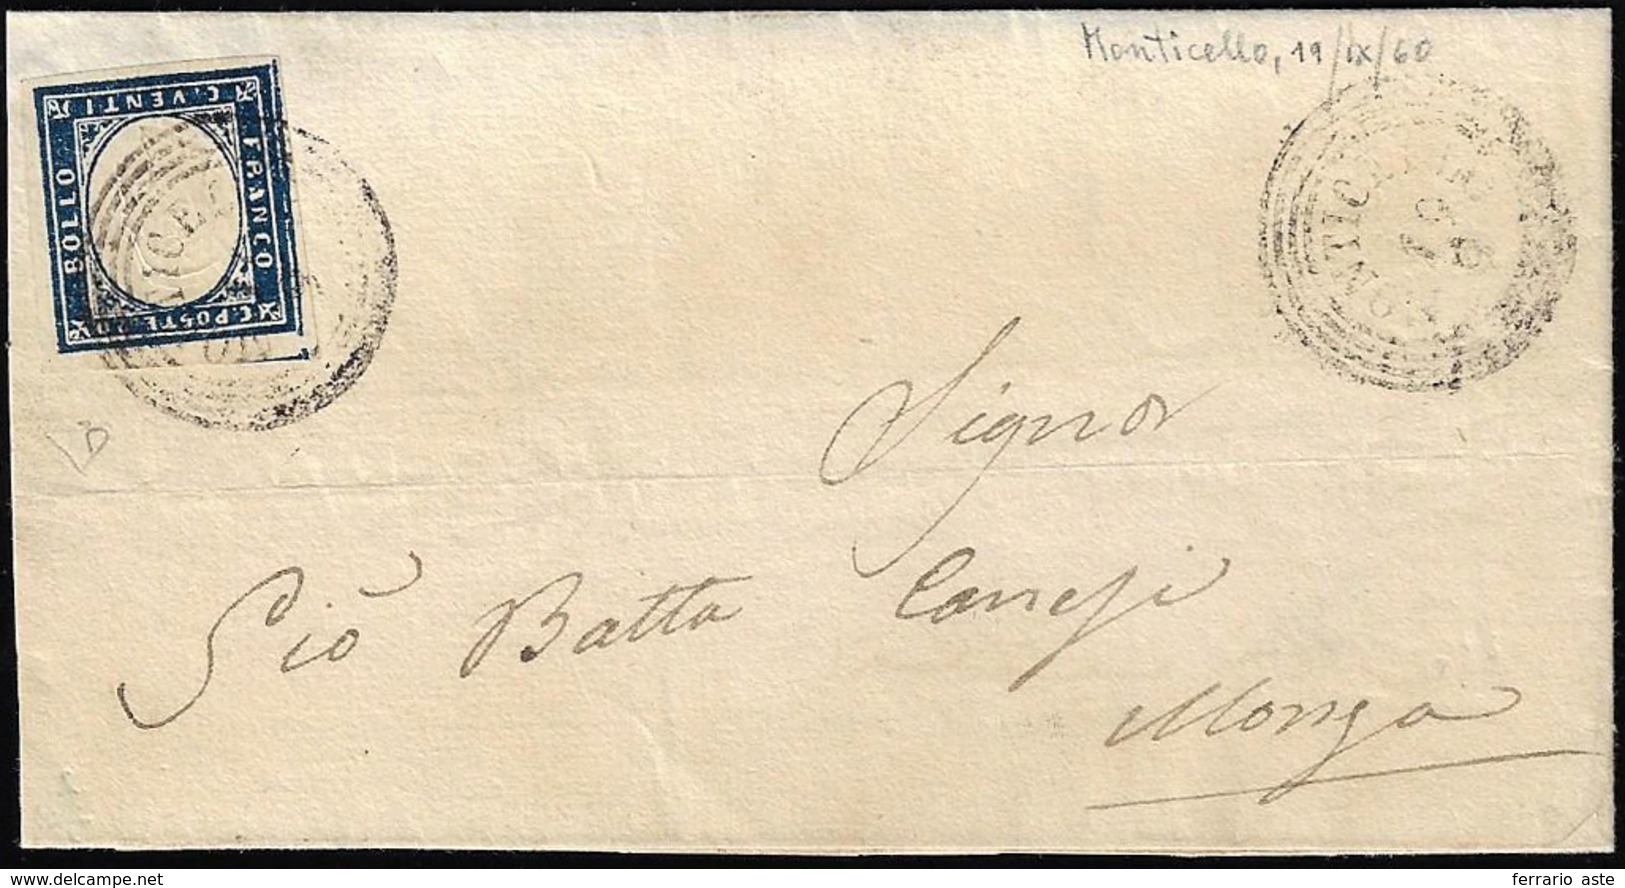 MONTICELLO, C4 Punti 8 - 20 Cent. (Sardegna 15C), Perfetto, Su Lettera Del 19/9/1860 Per Monza. E.Di... - Lombardo-Venetien